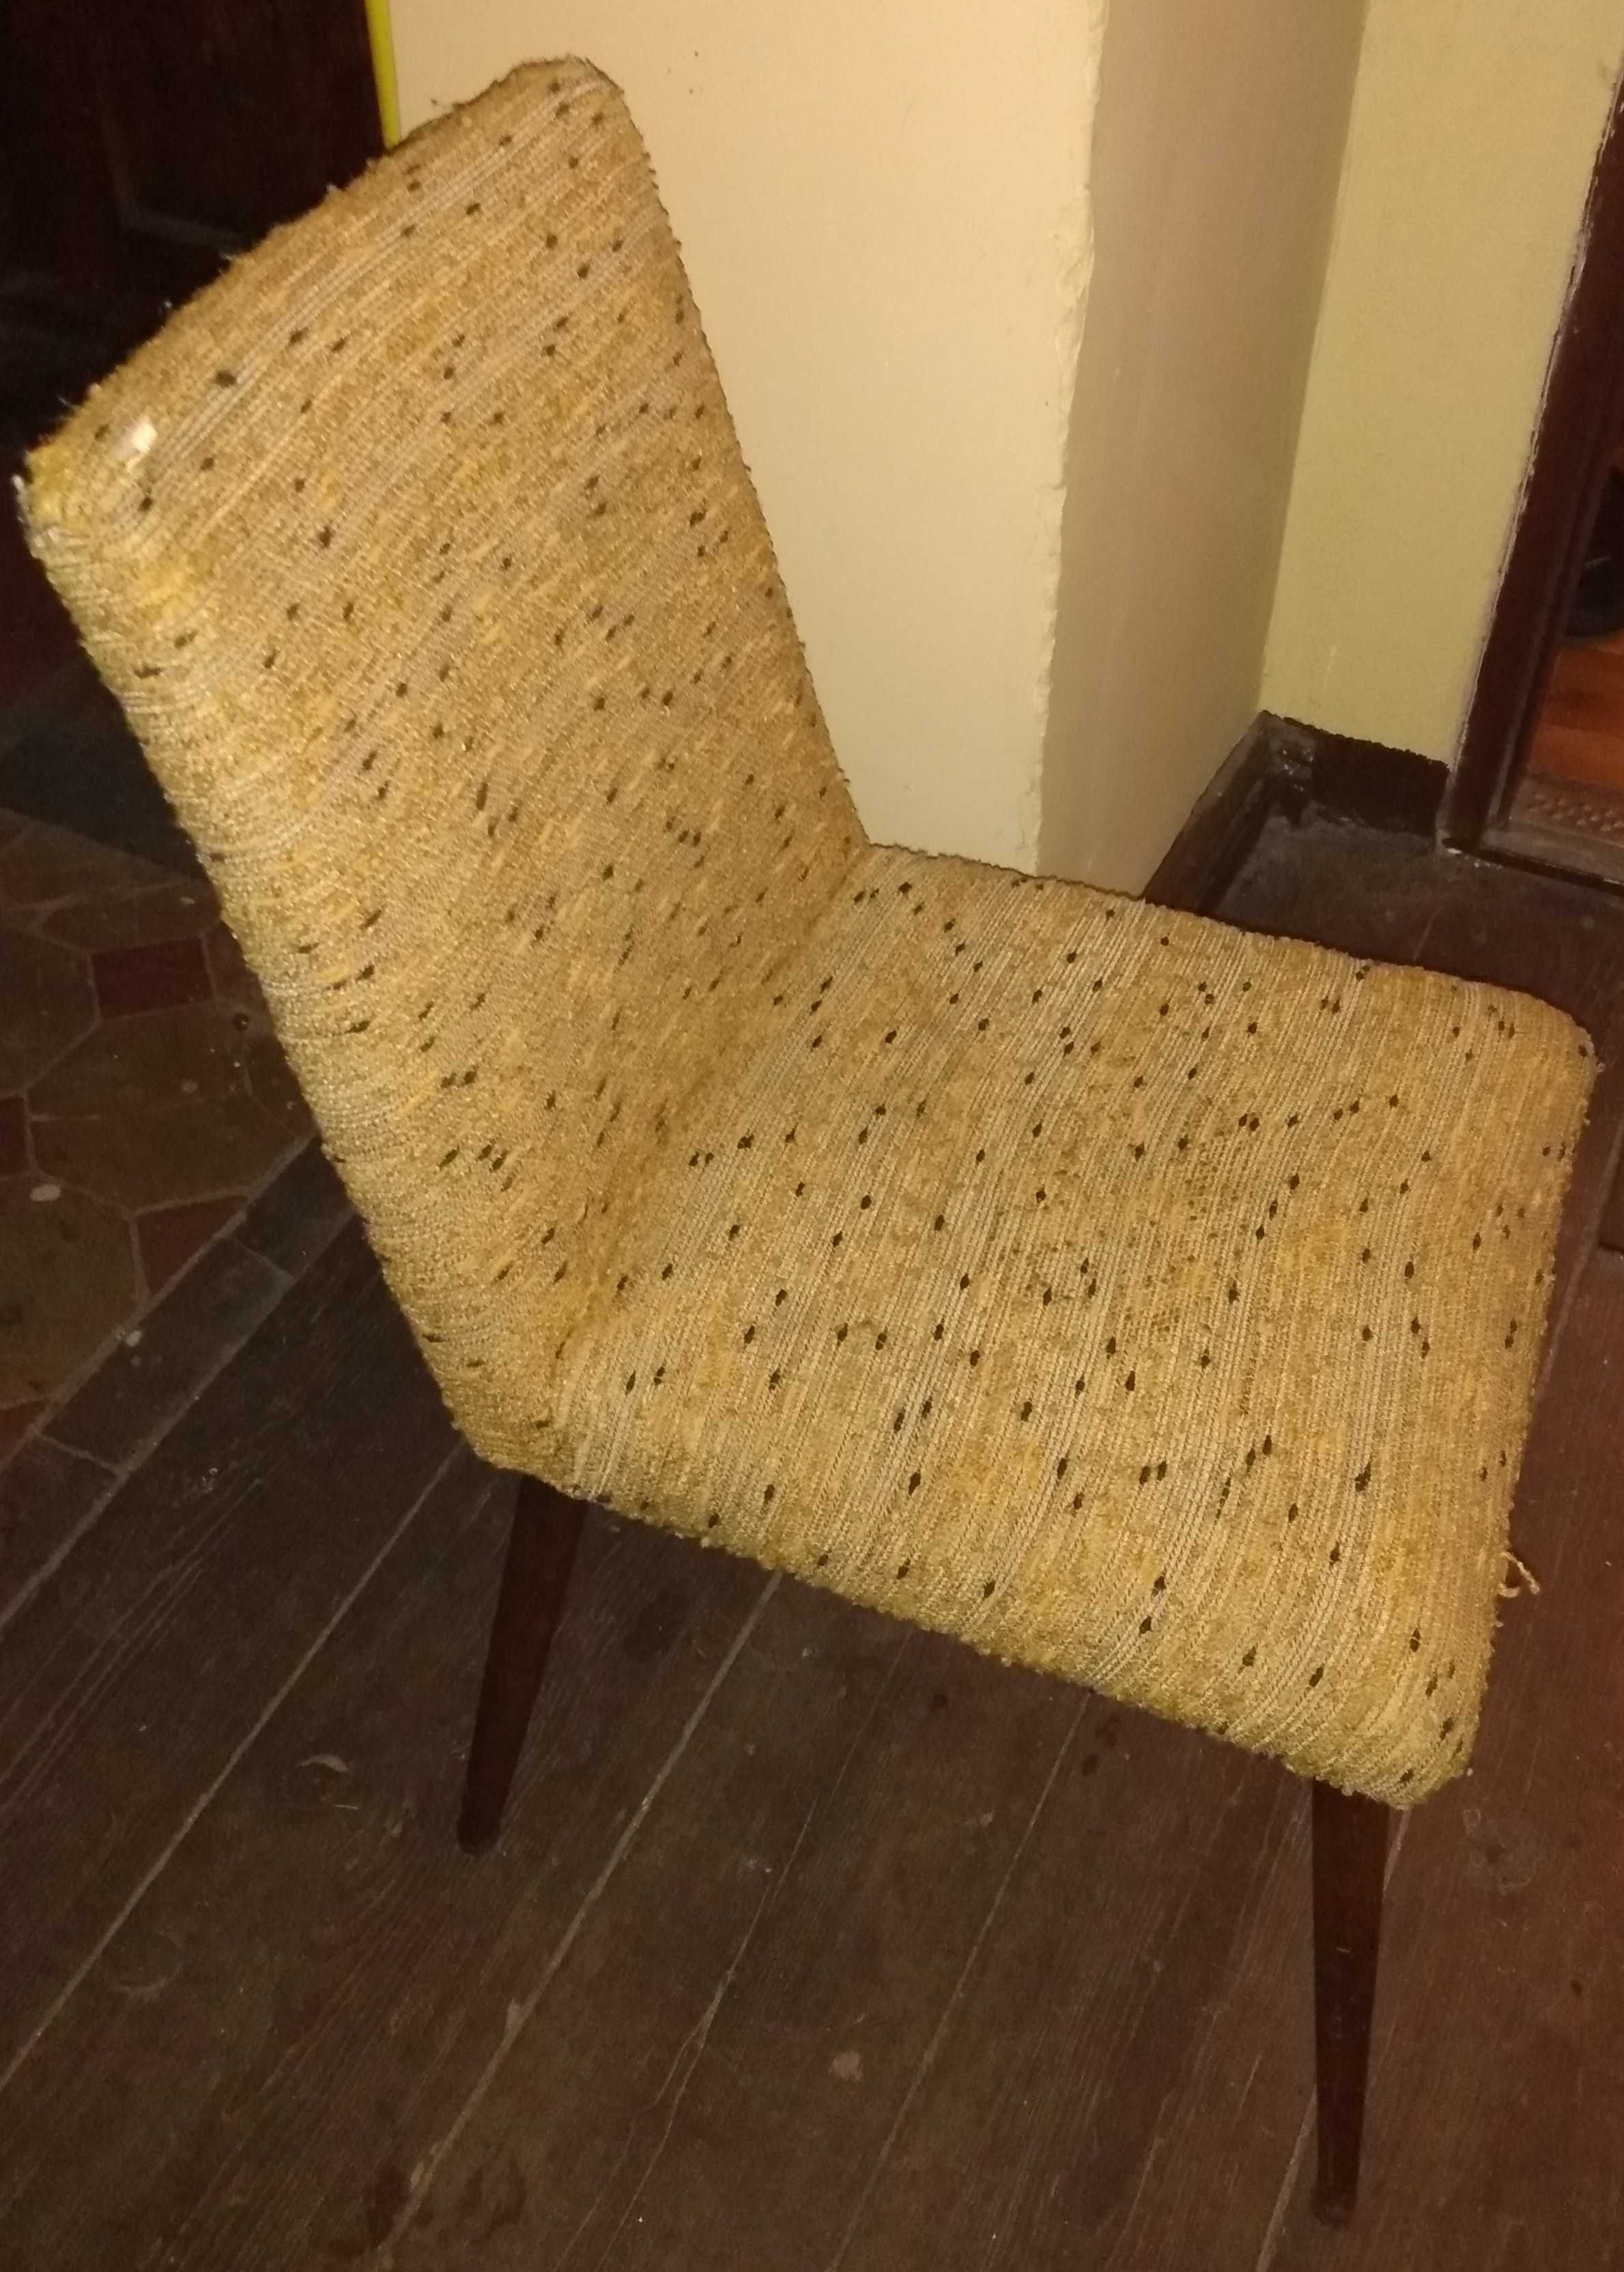 Zestaw krzeseł, krzesła tapicerowane patyczaki vintage, loft